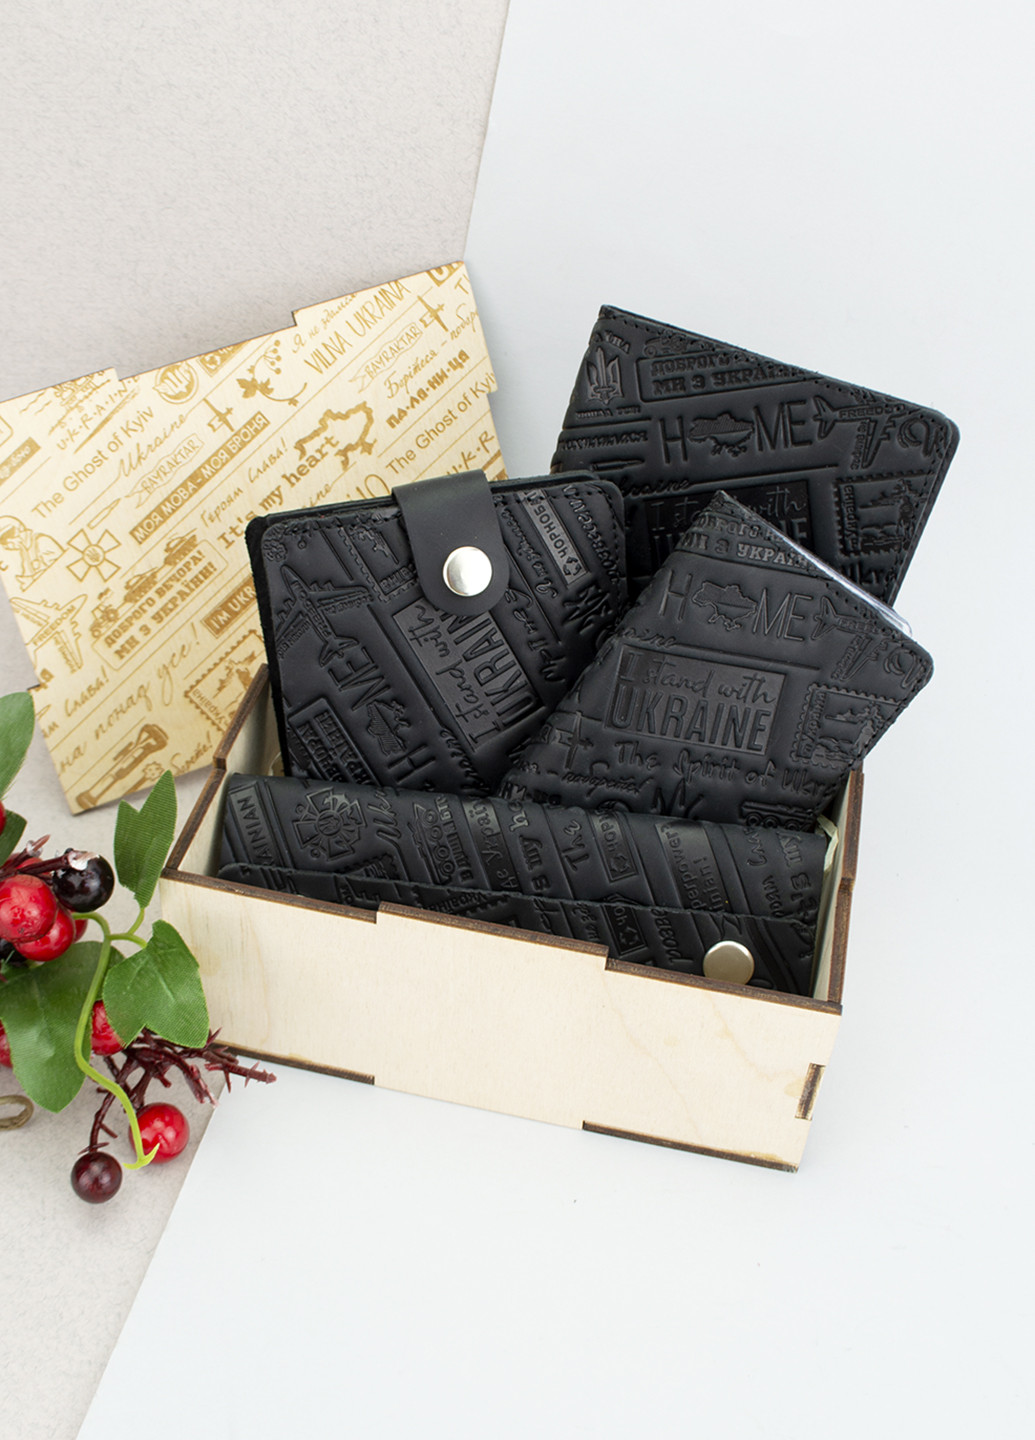 Подарочный мужской набор №70 "Ukraine" (черный) в коробке: портмоне + обложка на паспорт + права + ключница HandyCover (253516320)